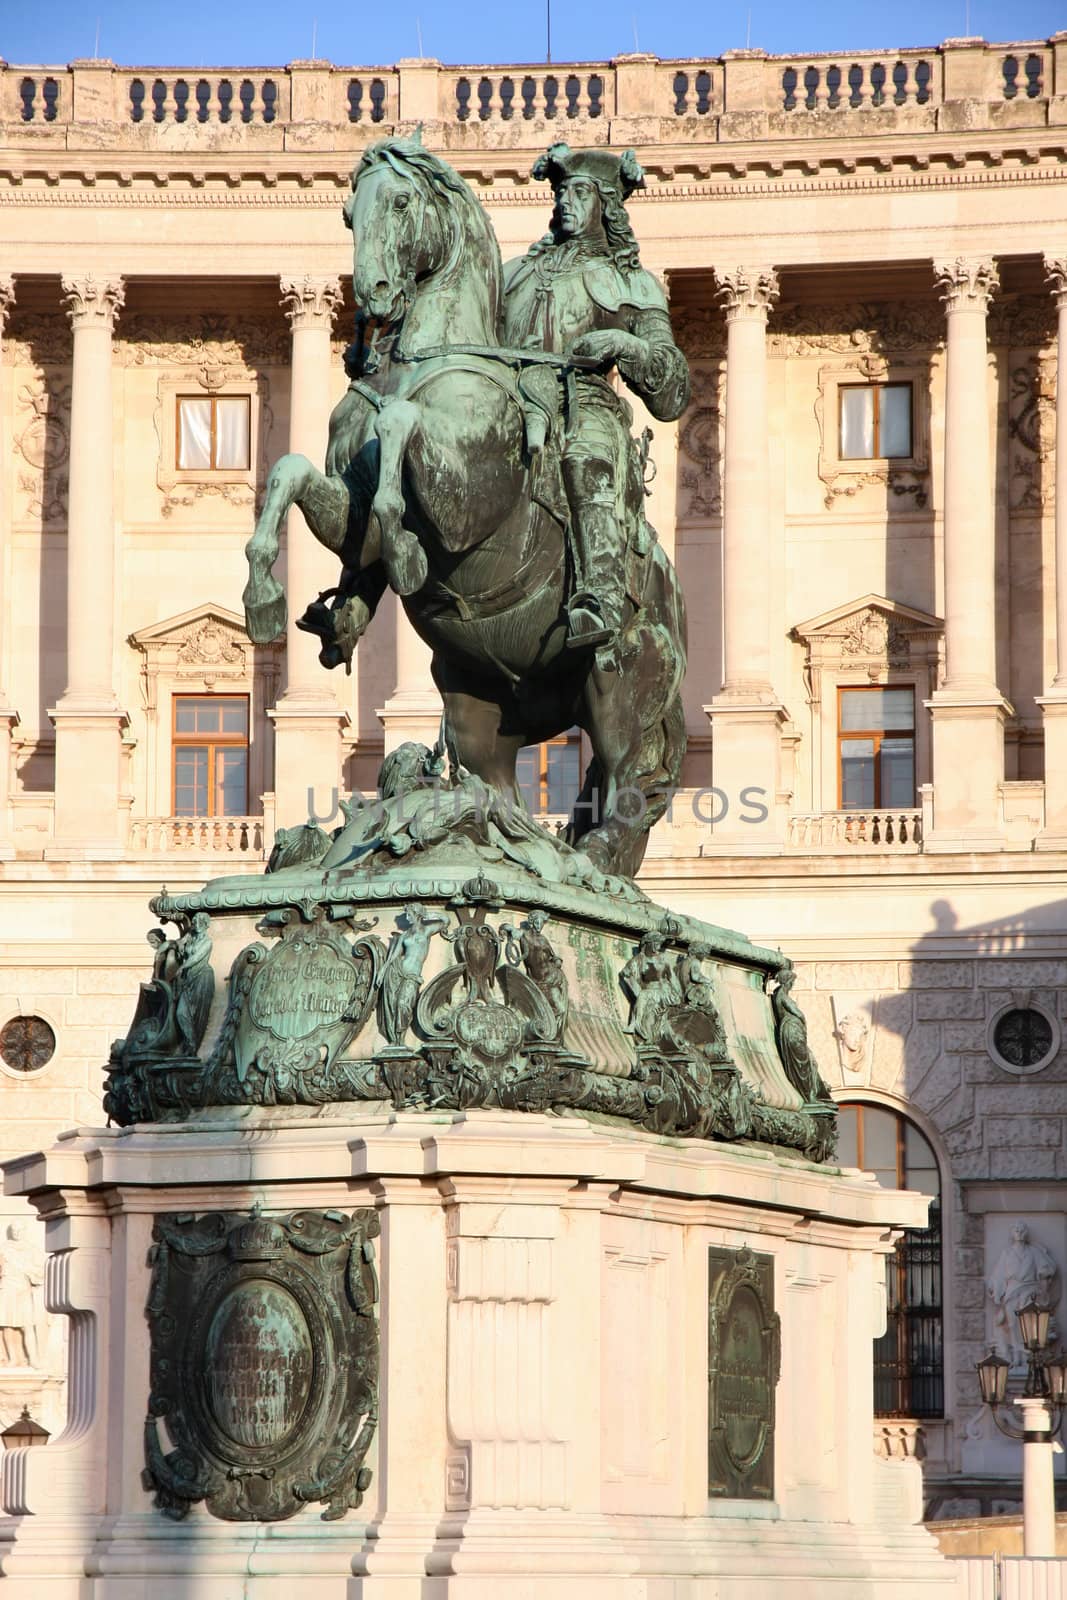 Prince Eugen of Savoy, Hofburg in Vienna, Austria by vladacanon